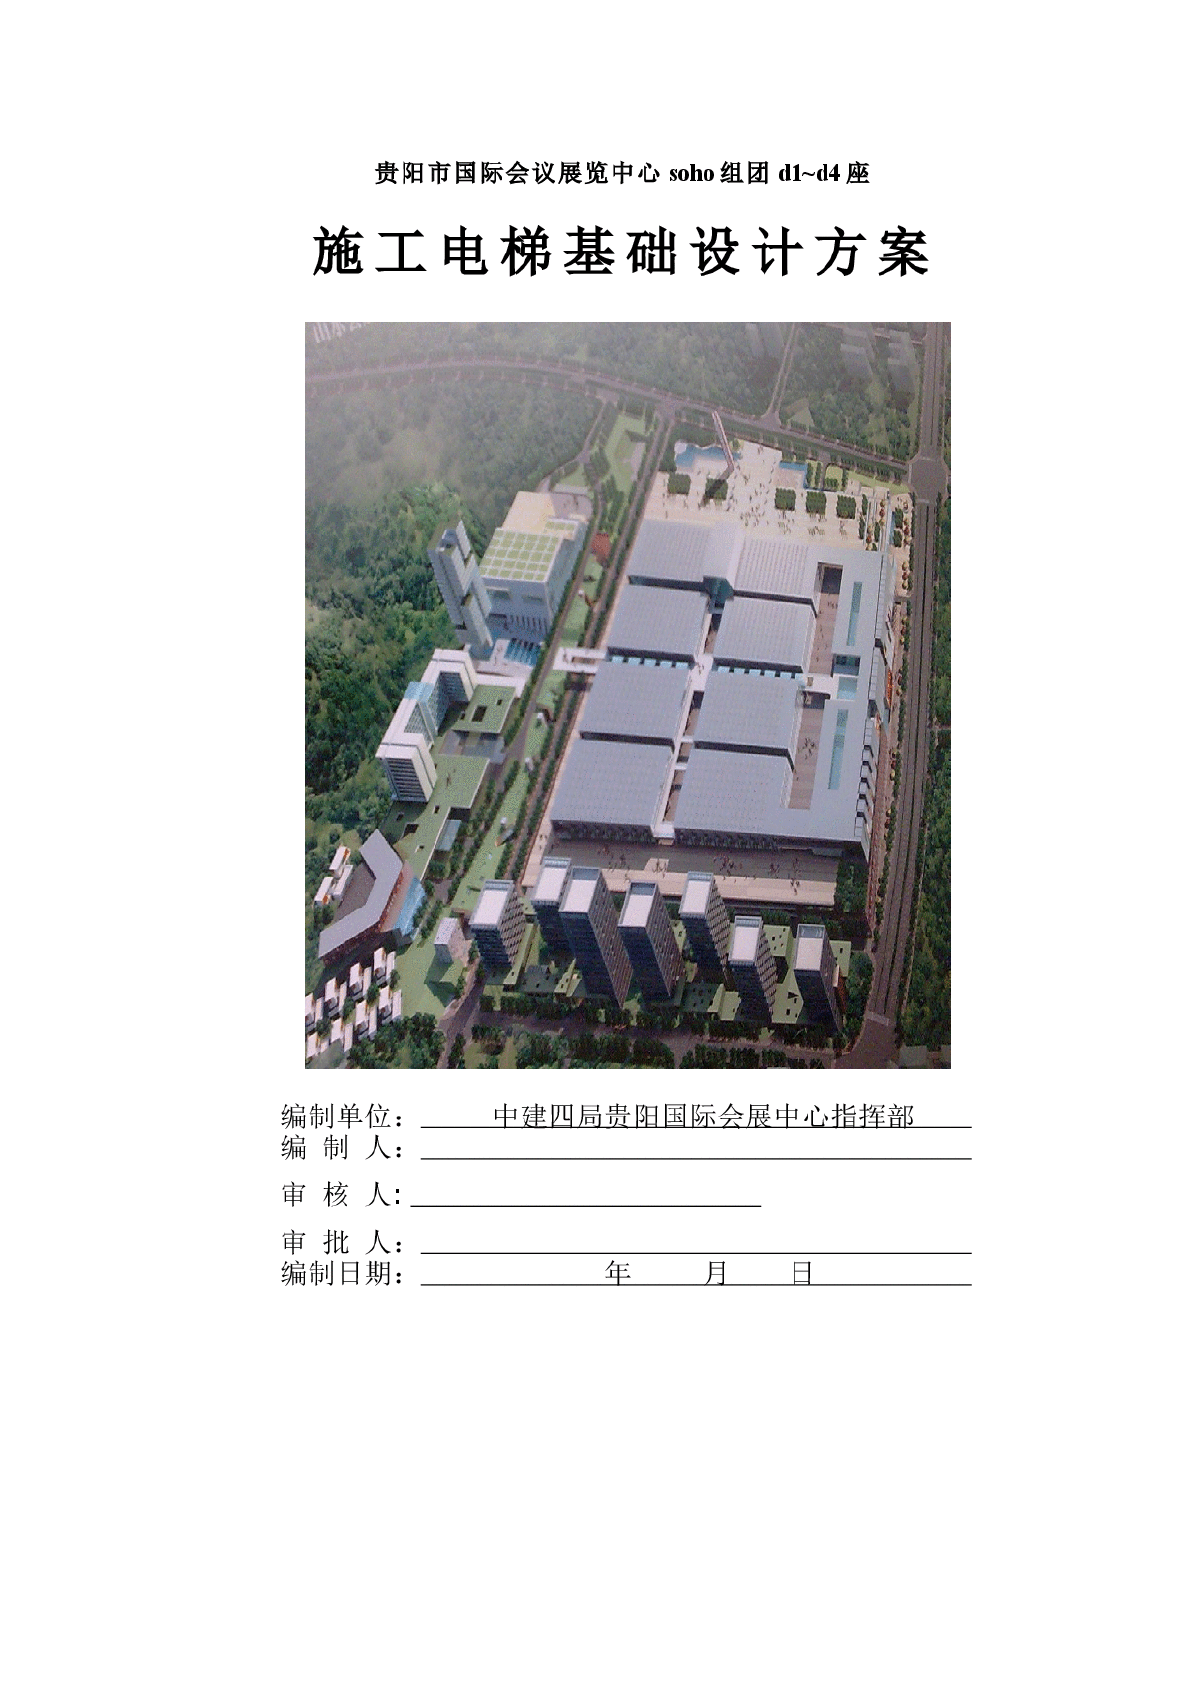 【贵阳】展厅施工电梯基础设计方案